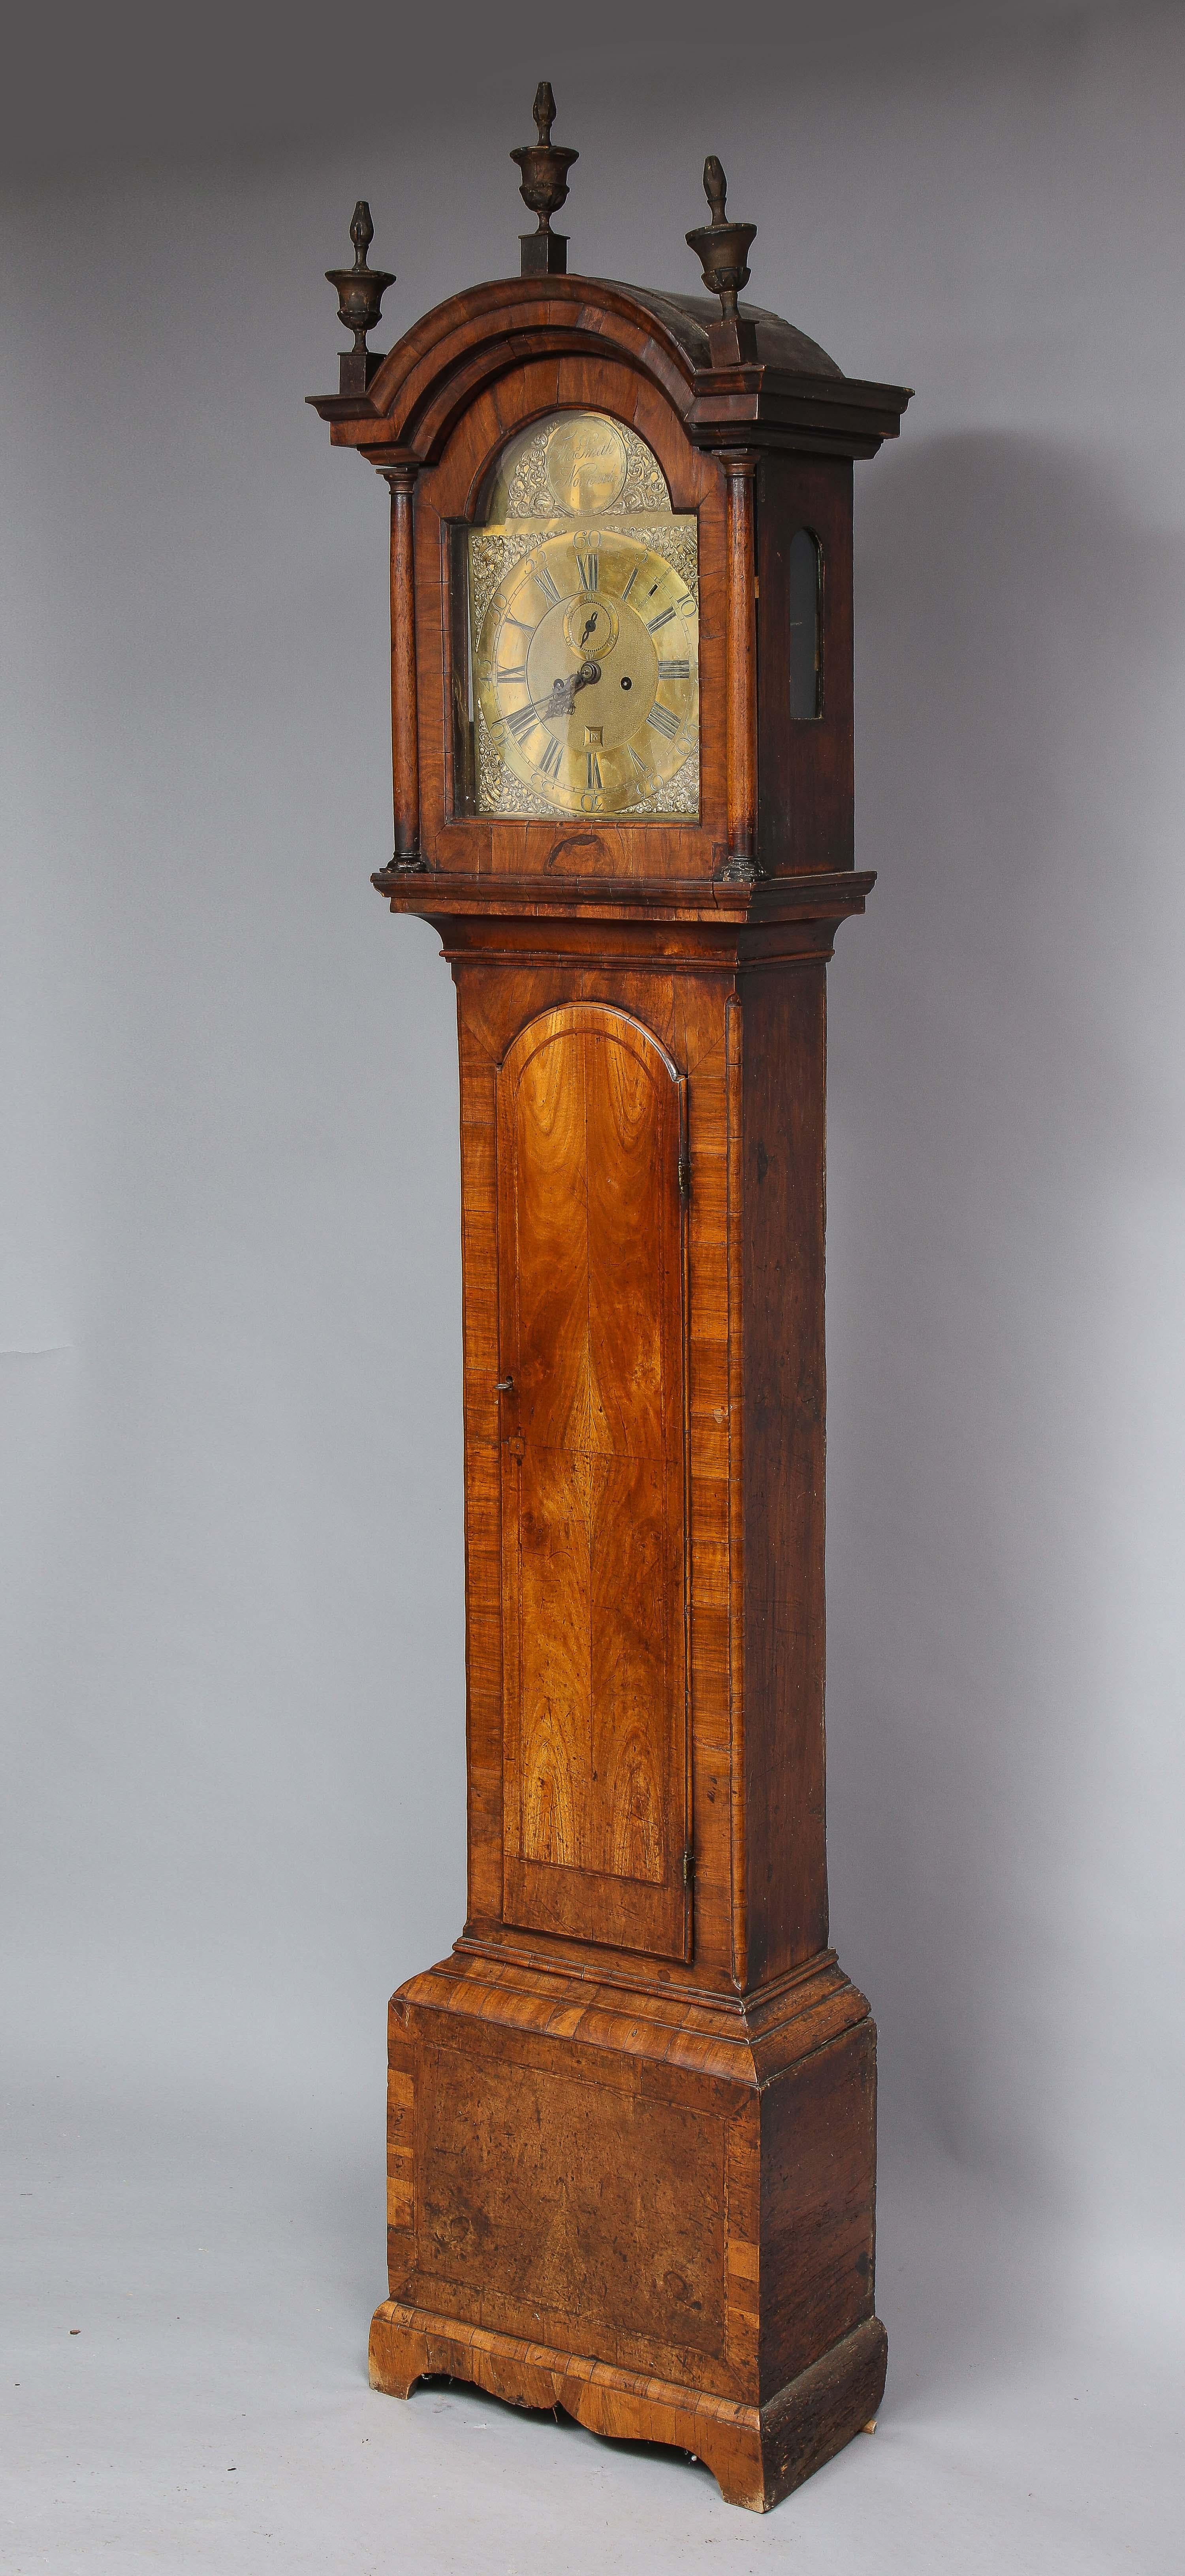 Belle horloge à grand boîtier de 8 jours par Thomas Smith de Norwich, les trois fleurons d'origine en bois doré en forme d'urne sur le capot arqué ayant une corniche moulée, le cadran en laiton avec le patron gravé 